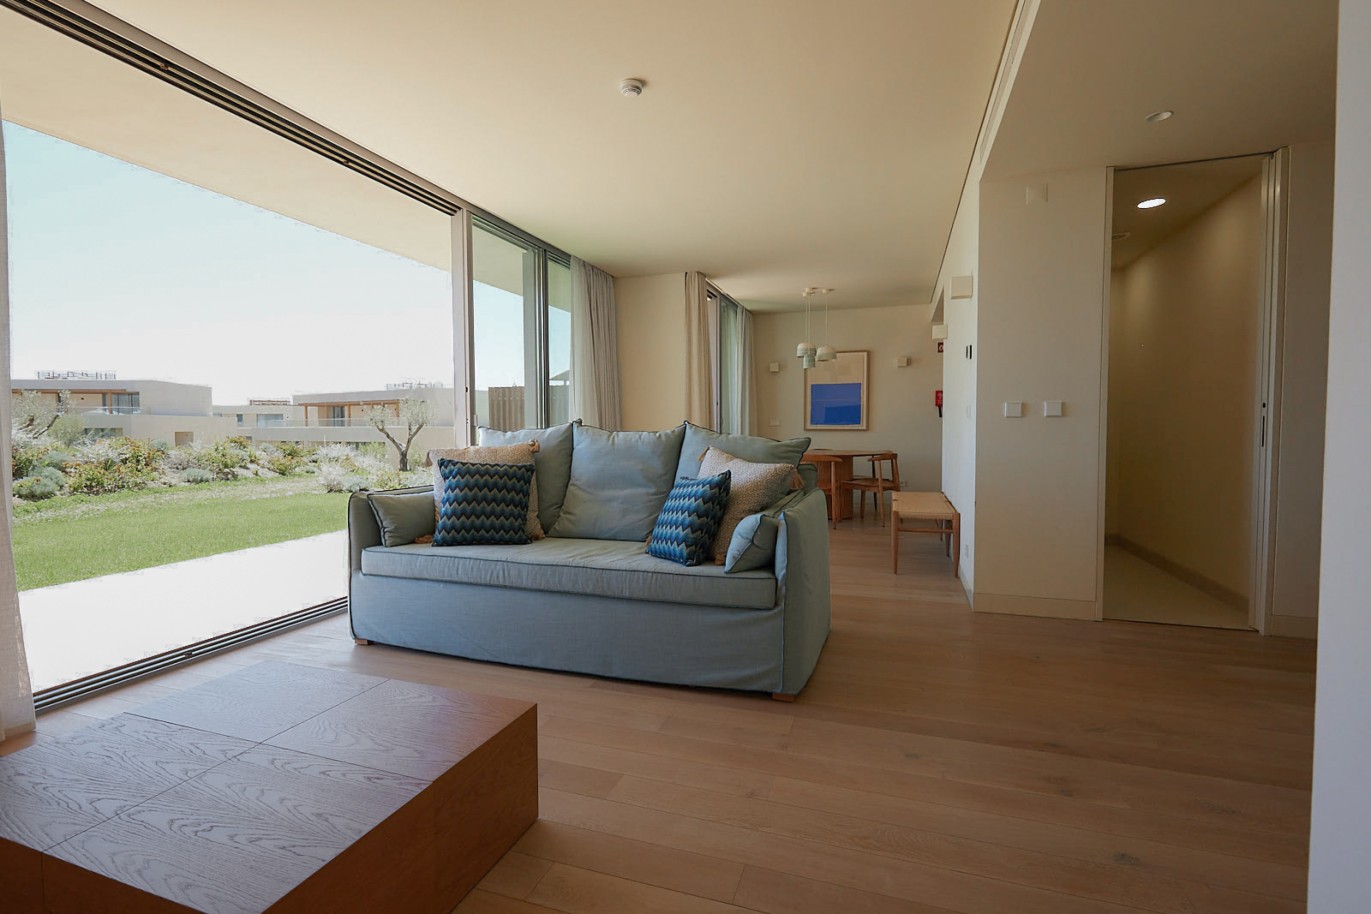 Piso de 2 dormitorios en complejo, en venta en Porches, Algarve_230635